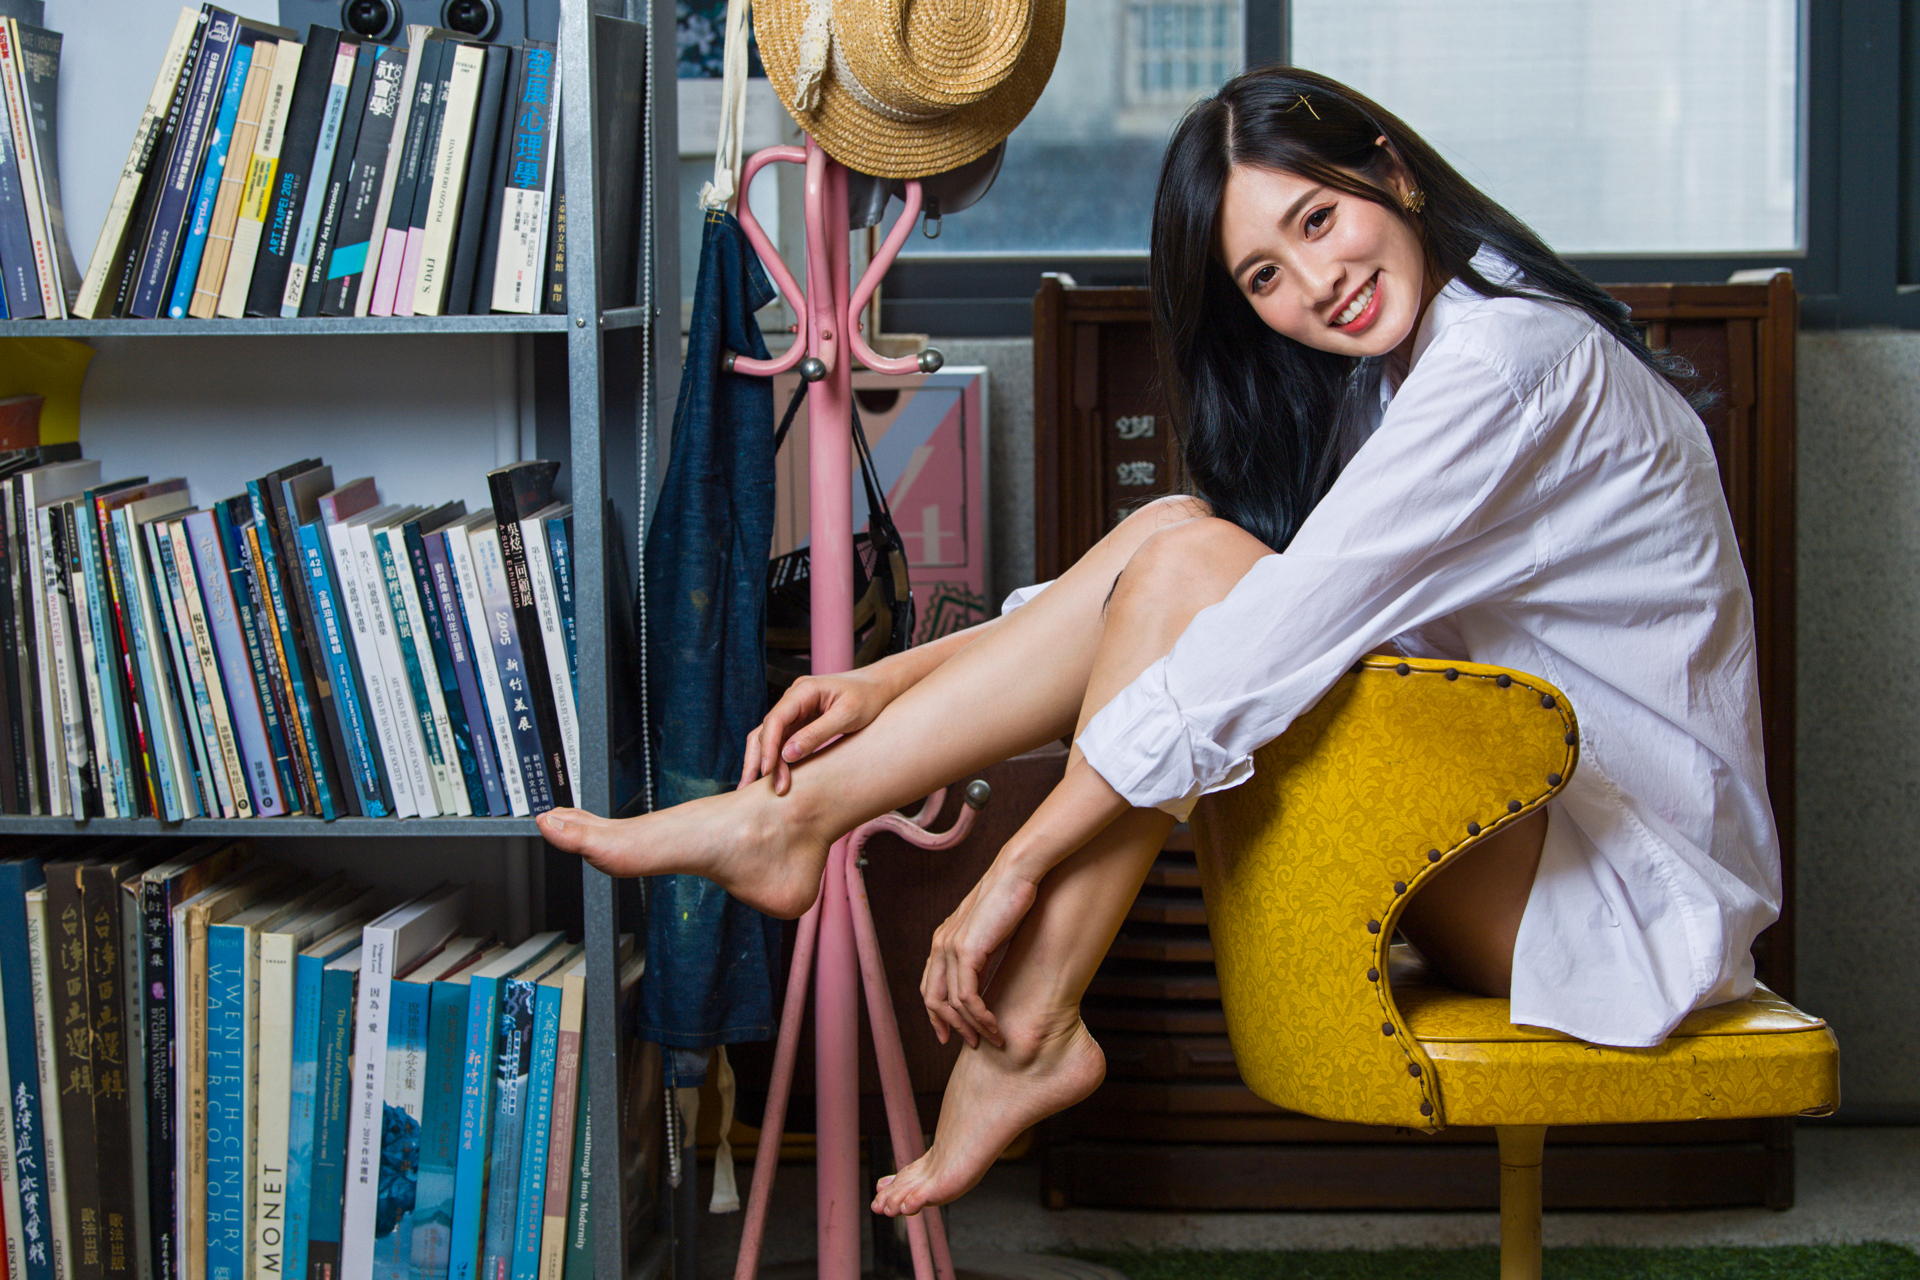 Asian Model Women Long Hair Dark Hair Barefoot White Shirt Chair Sitting Shelves Books Hat Depth Of  1920x1280